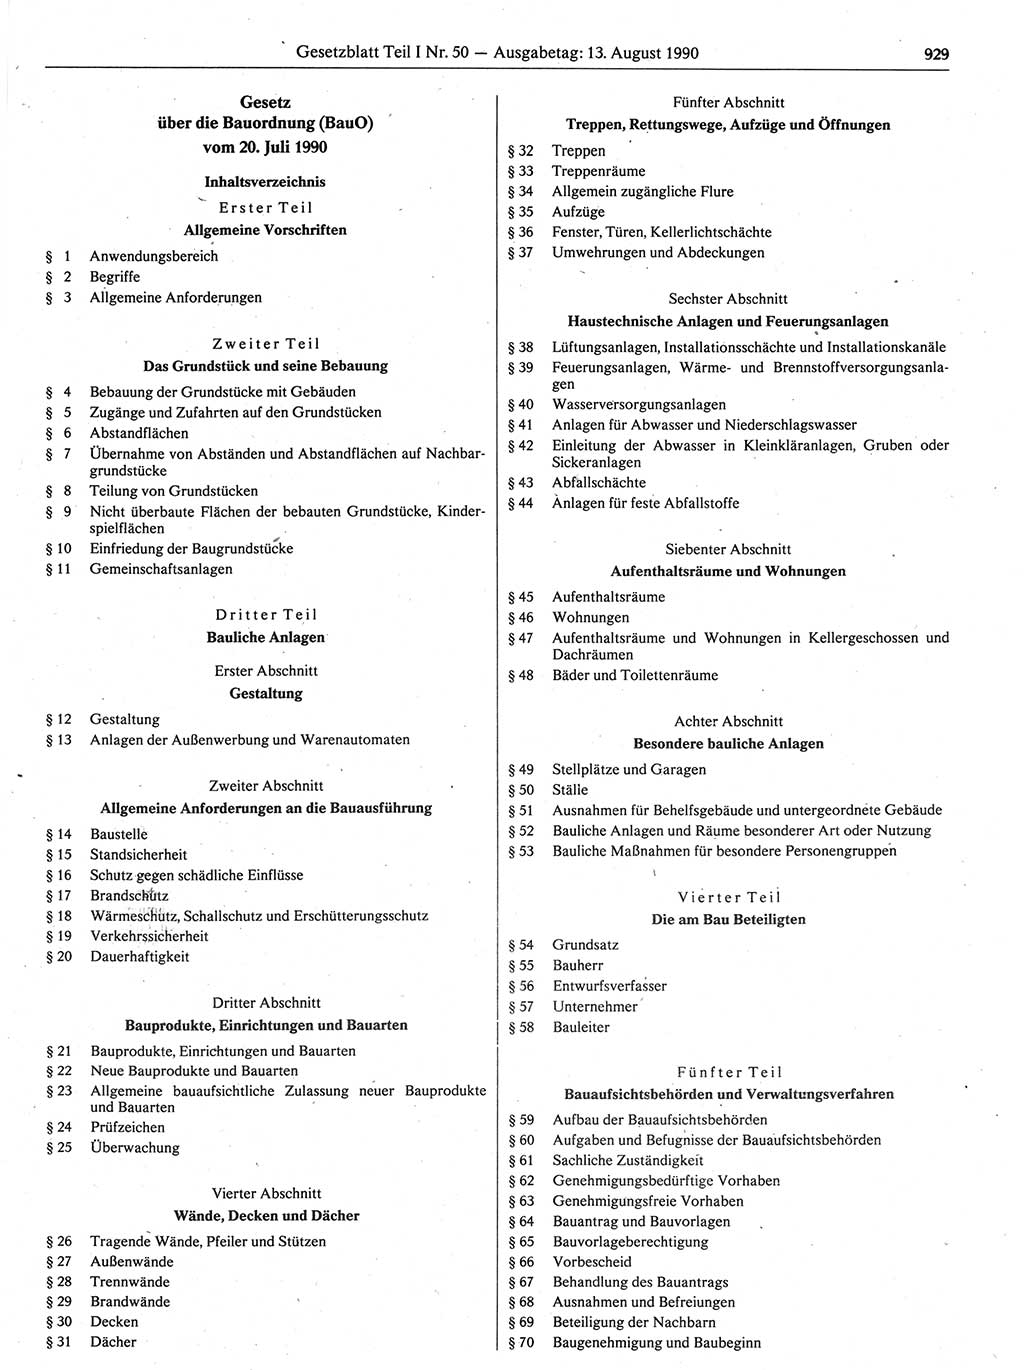 Gesetzblatt (GBl.) der Deutschen Demokratischen Republik (DDR) Teil Ⅰ 1990, Seite 929 (GBl. DDR Ⅰ 1990, S. 929)